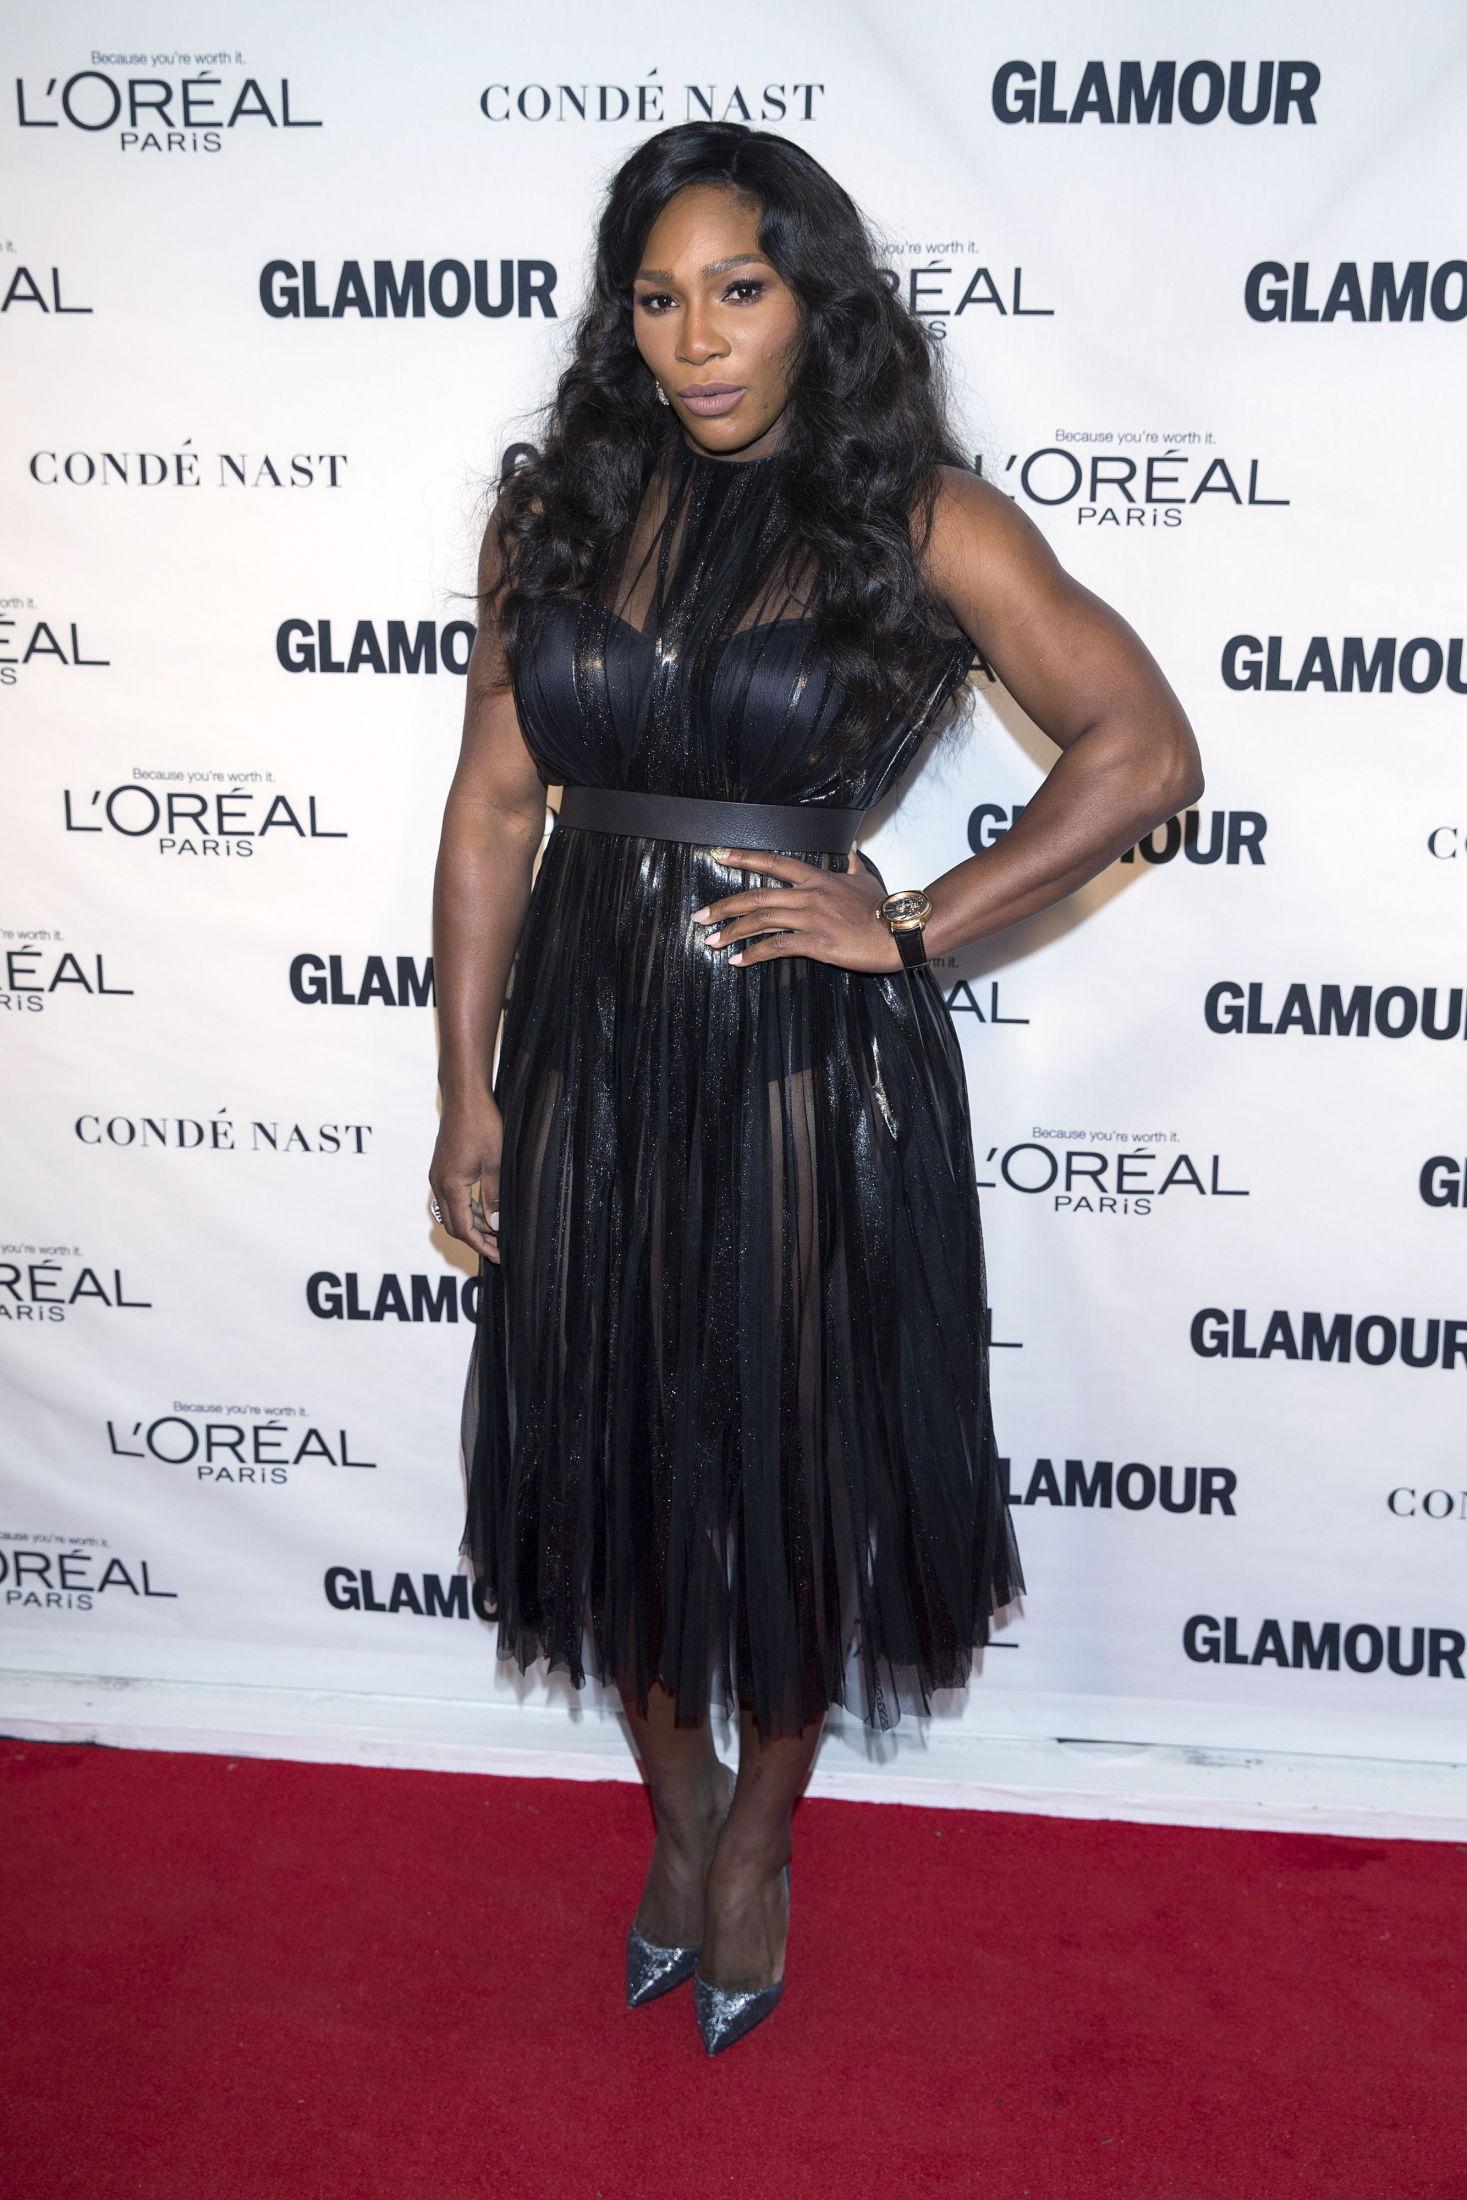 GJENNOMSIKTIG: Tennisspiller Serena Williams lot den transparente, svarte kjolen komme til sin rett, med minimalt tilbehør.